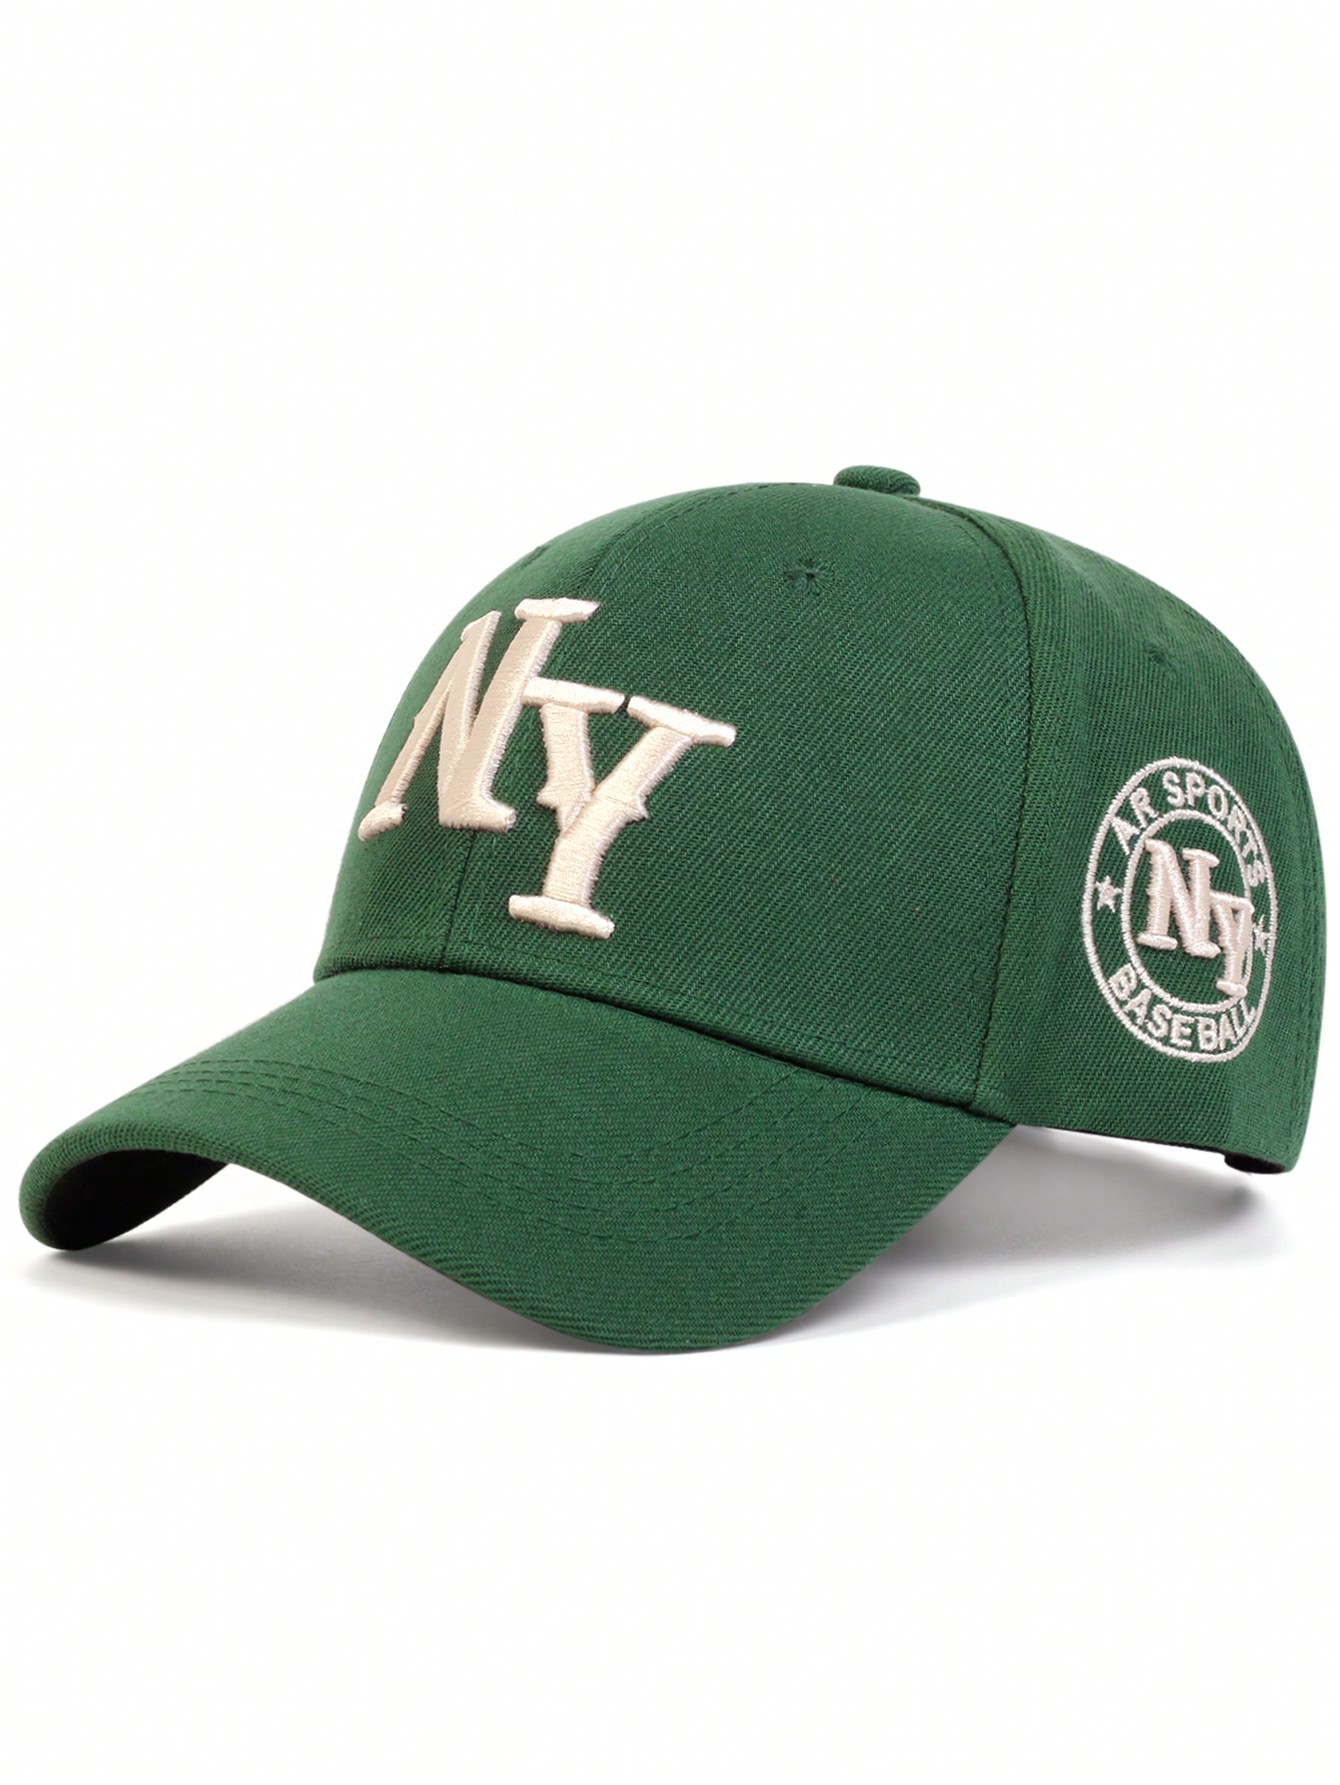 1 шт. мужская бейсболка с вышивкой букв «Нью-Йорк», зеленый